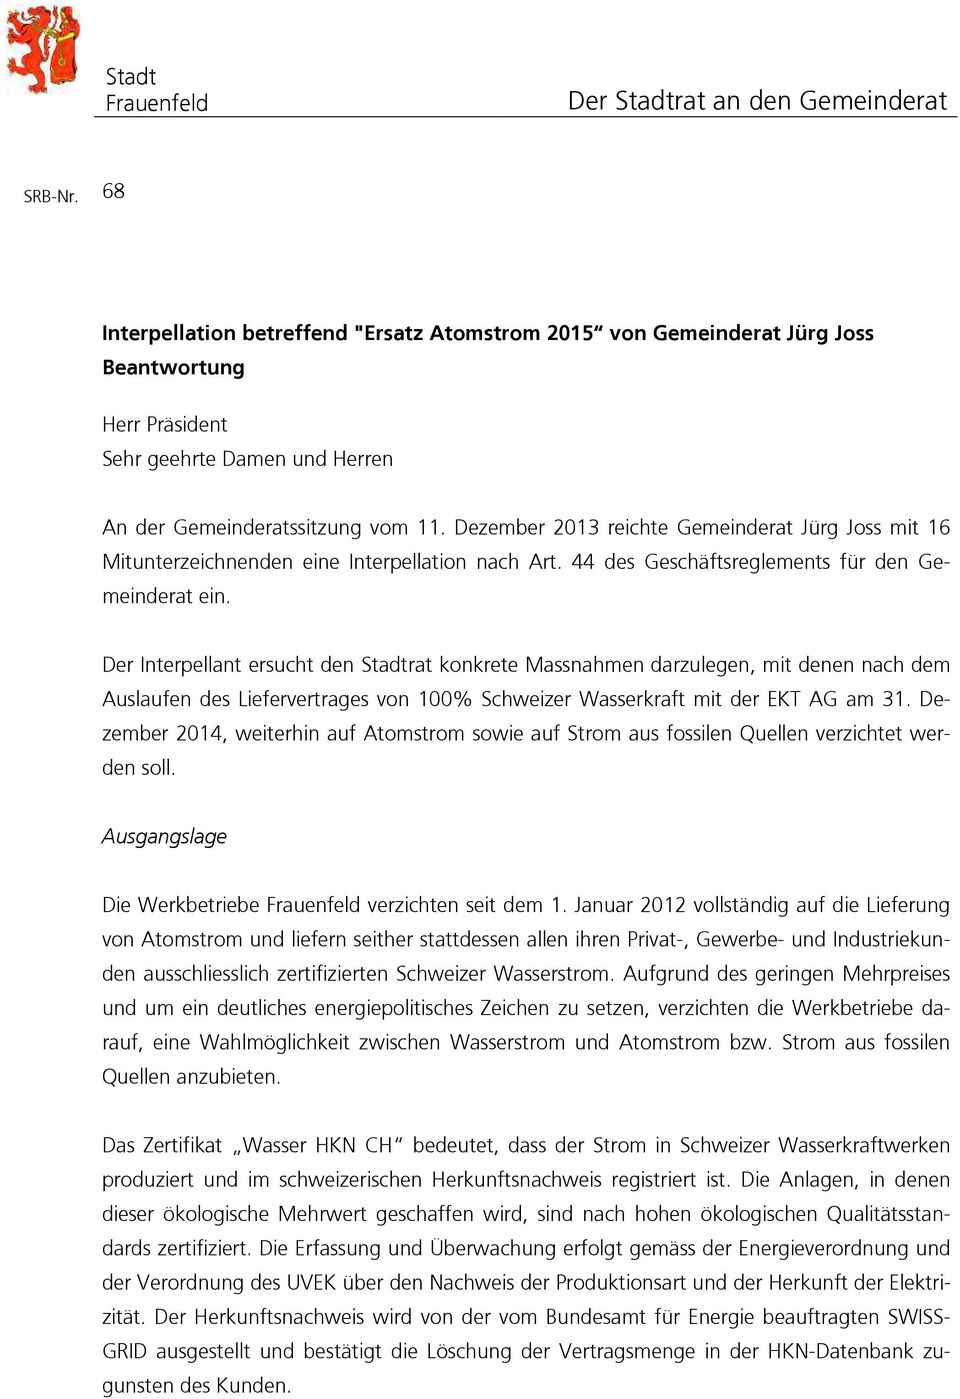 Dezember 2013 reichte Gemeinderat Jürg Joss mit 16 Mitunterzeichnenden eine Interpellation nach Art. 44 des Geschäftsreglements für den Gemeinderat ein.